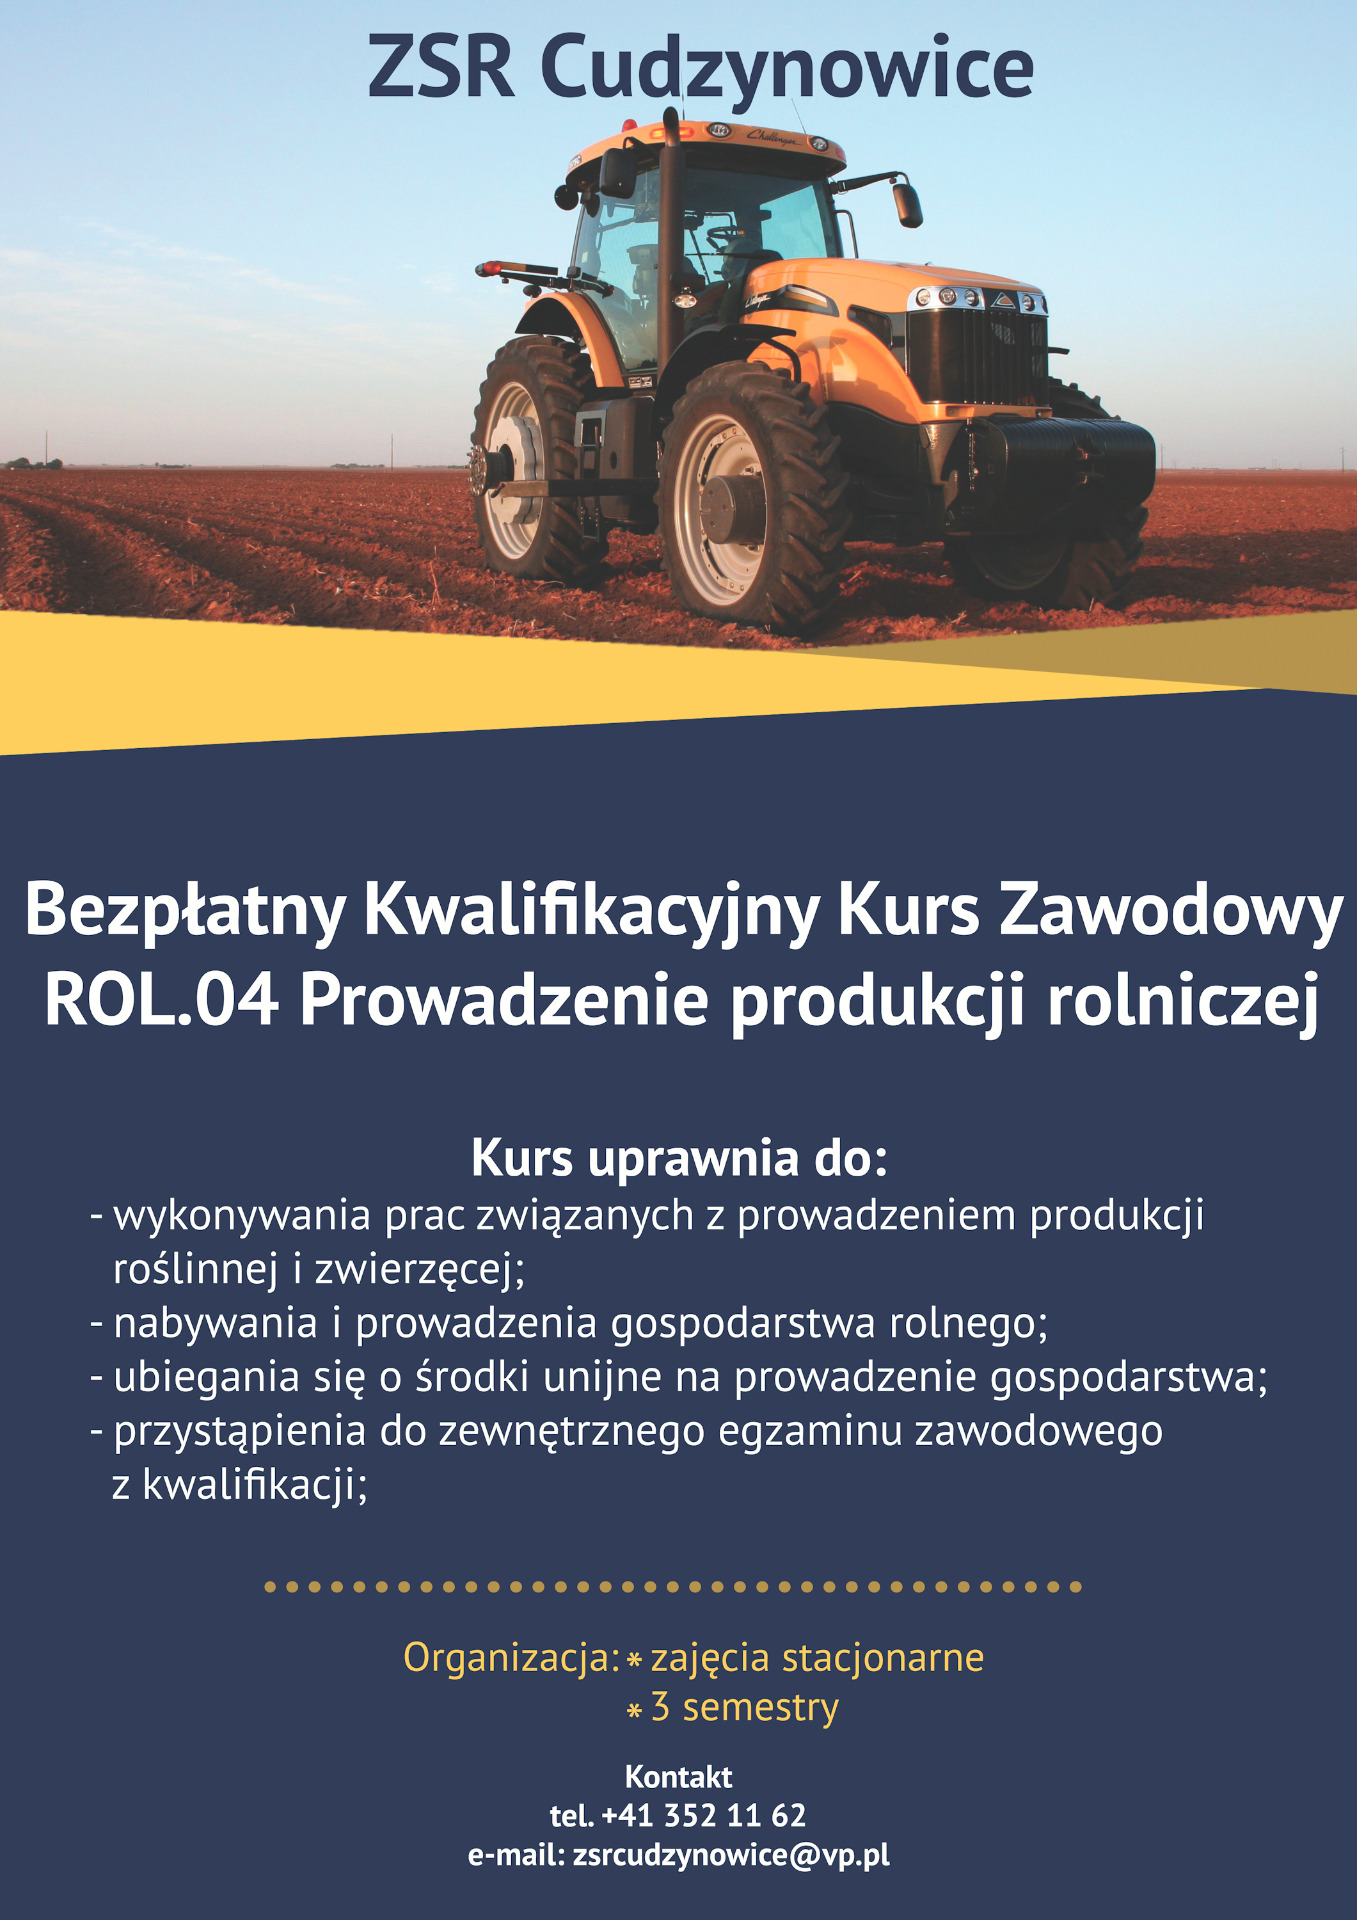 Bezpłatny Kwalifikacyjny Kurs Zawodowy - ROL.04 - Prowadzenie produkcji rolniczej. - Obrazek 1